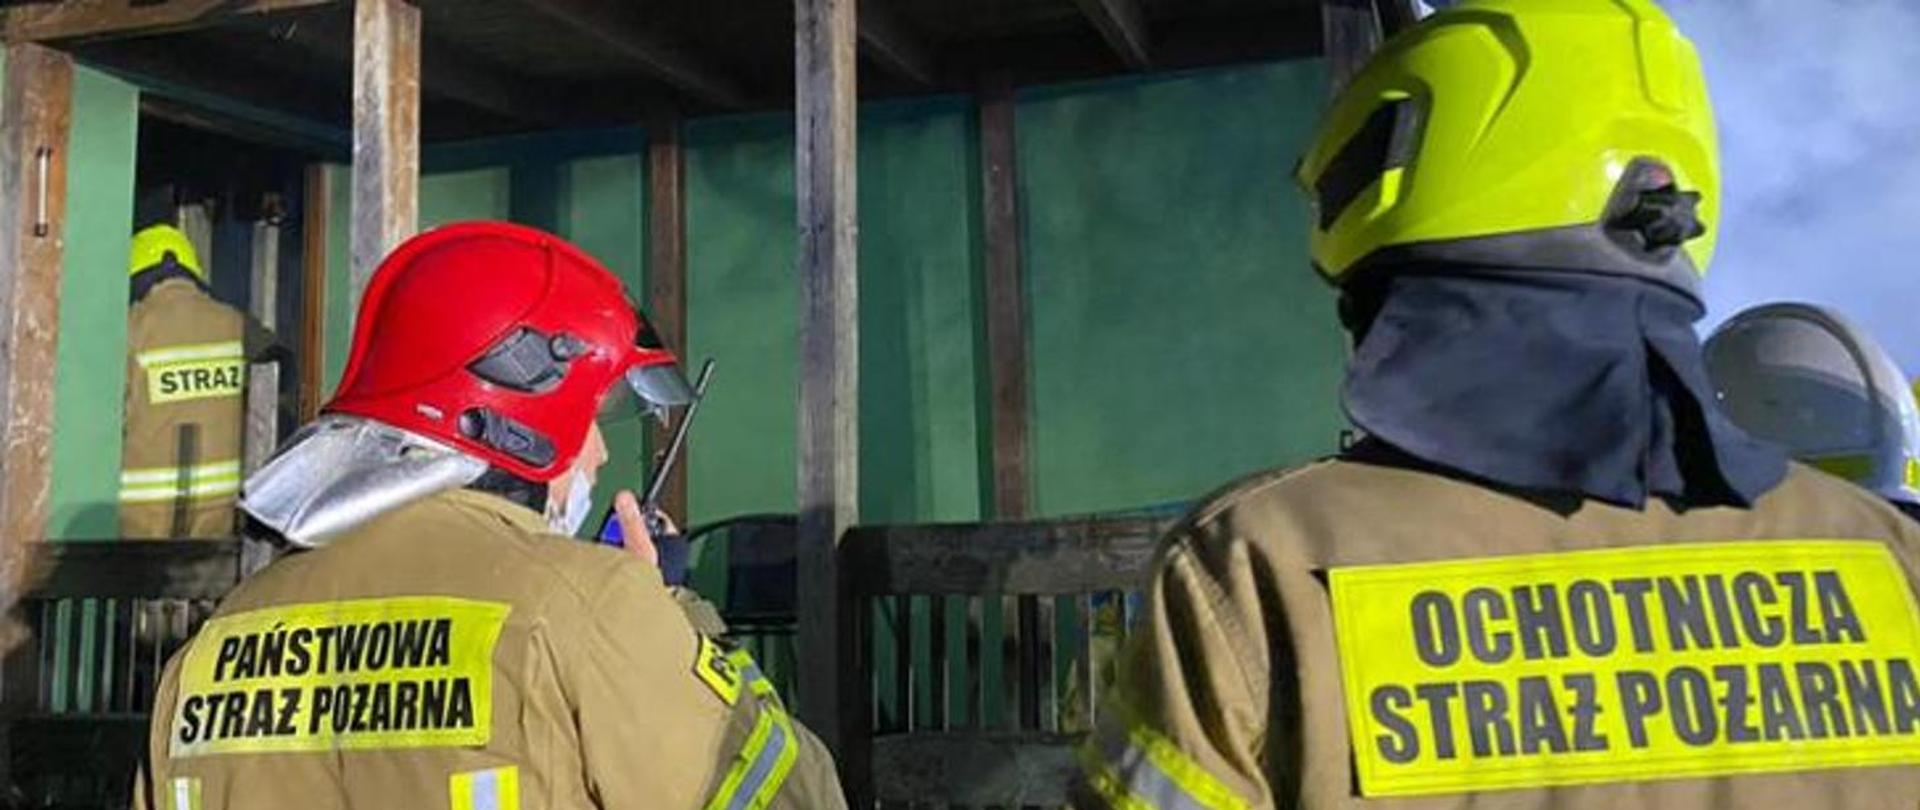 Na zdjęciu widać trzech strażaków odwróconych plecami jeden z nich trzyma w dłoni krótkofalówkę.